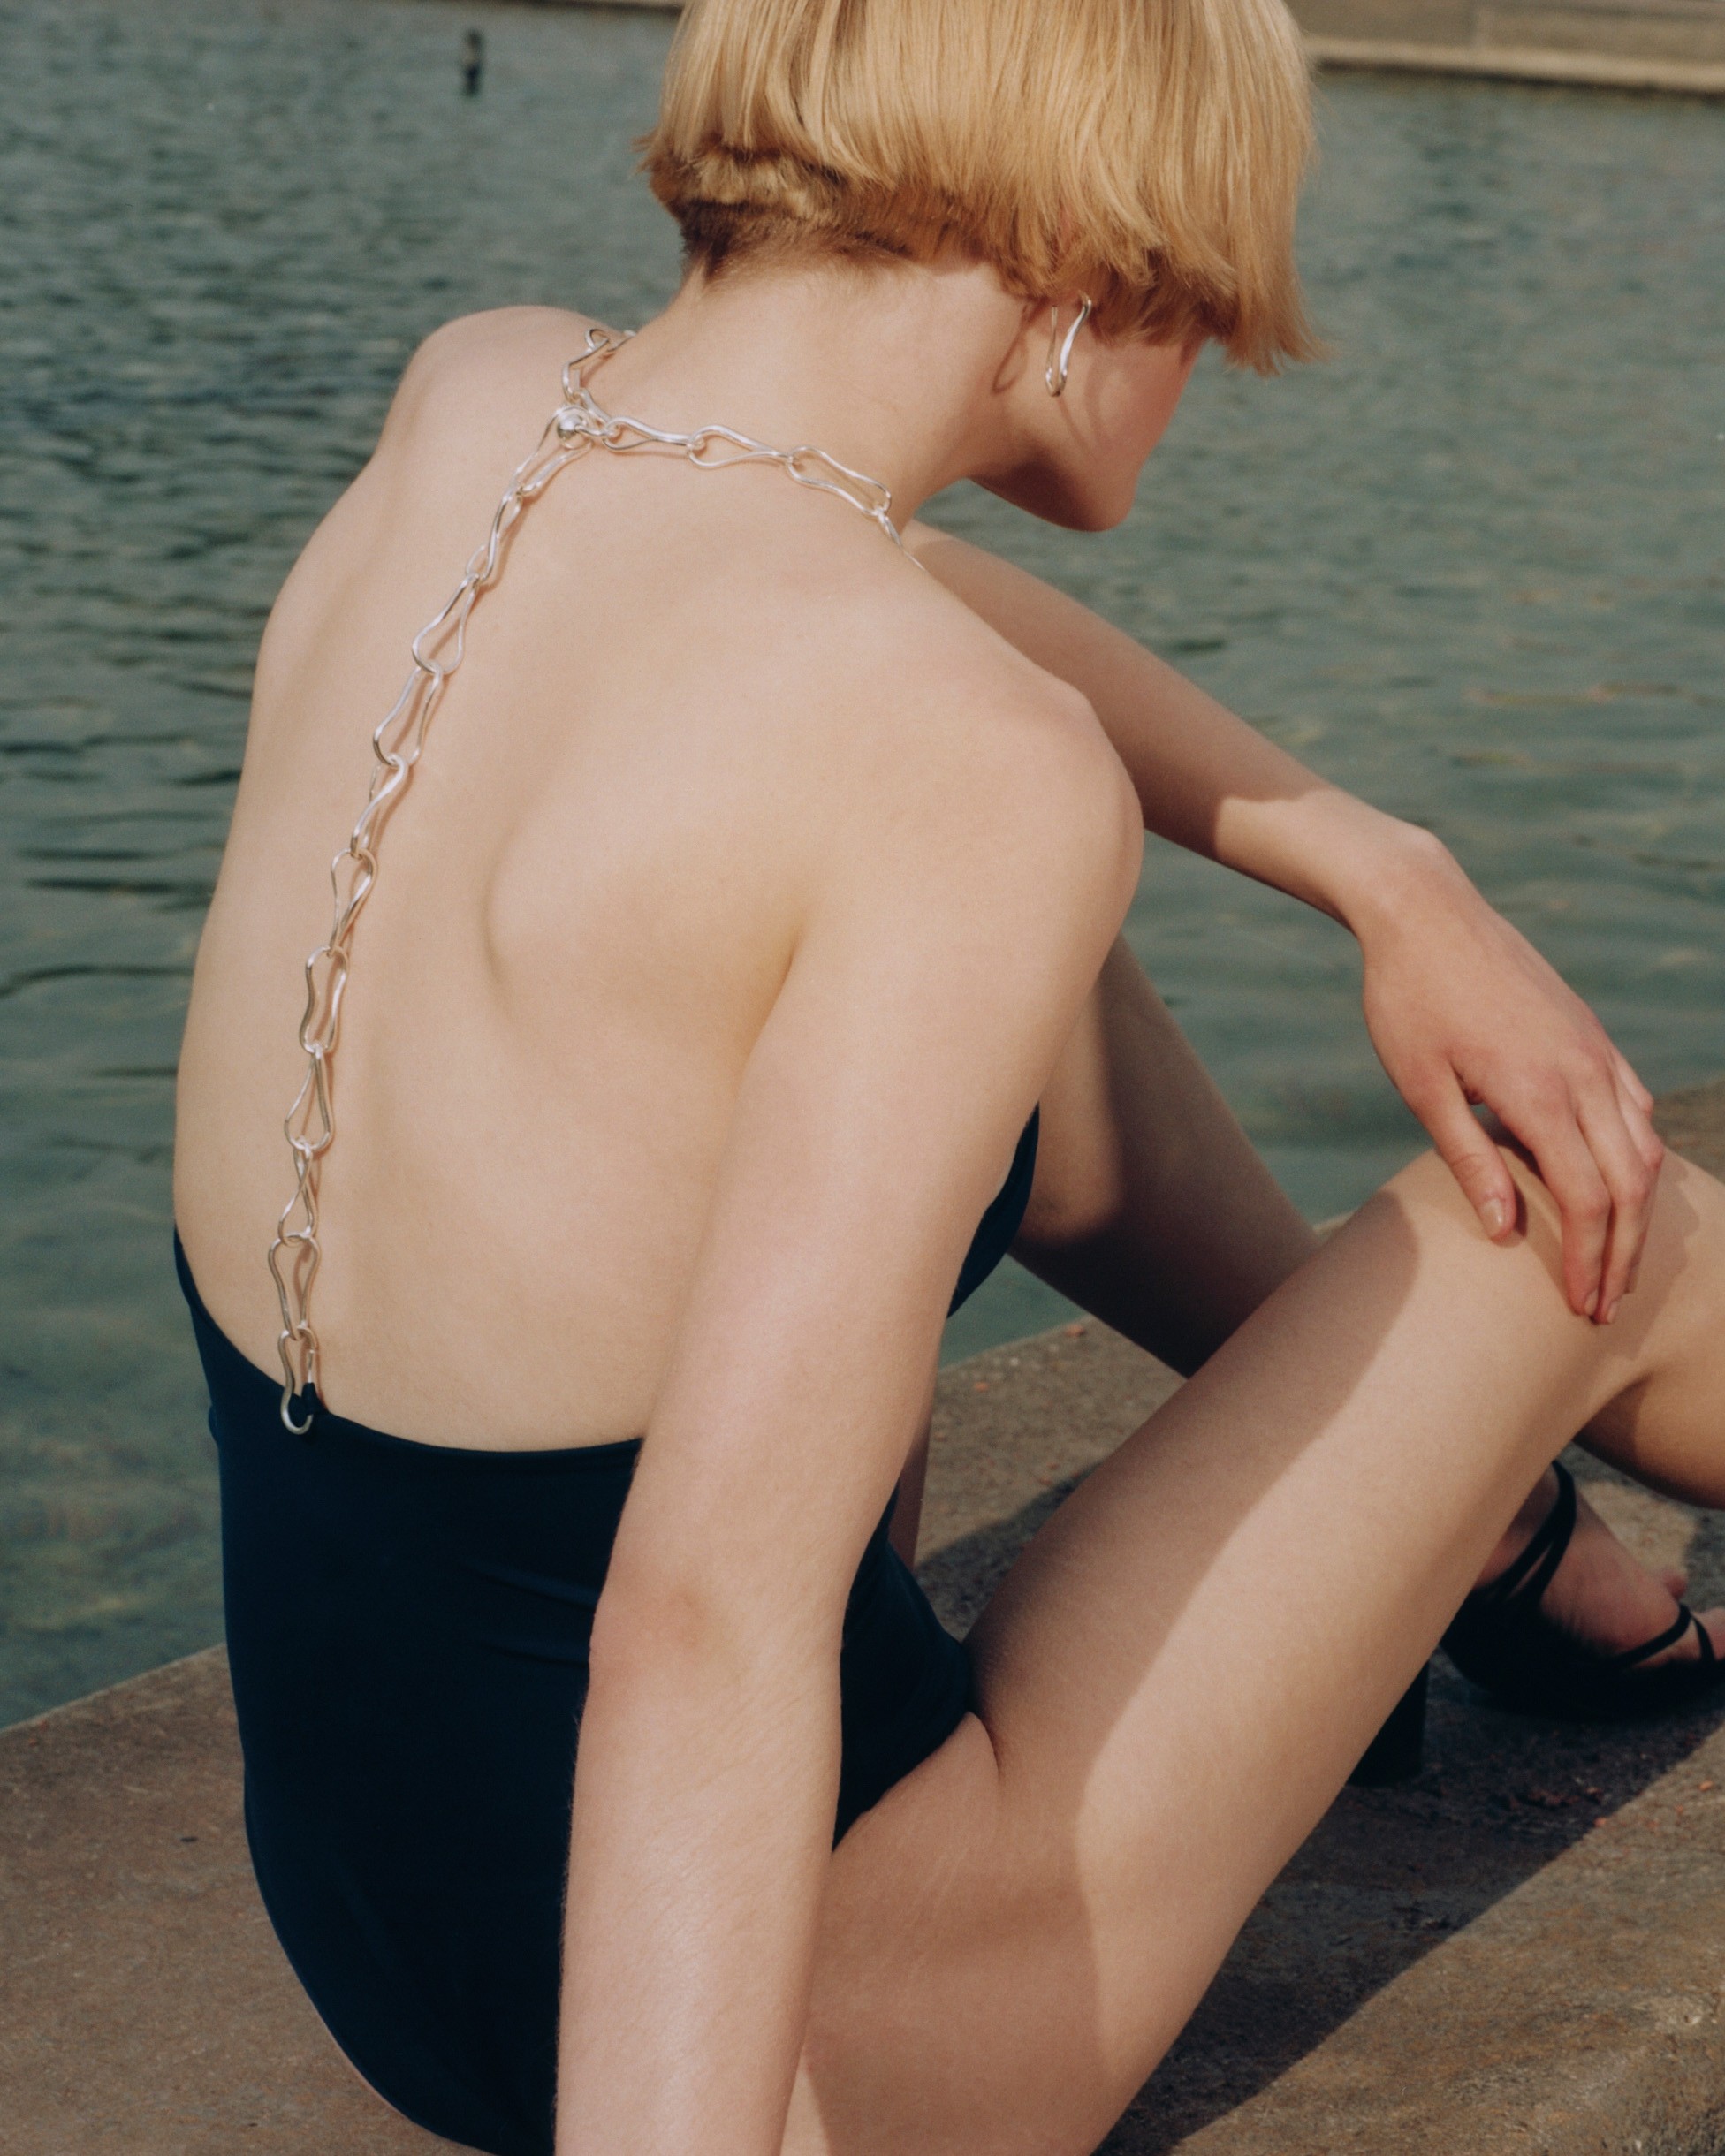 jewellery | swimsuit | woman | blonde | water